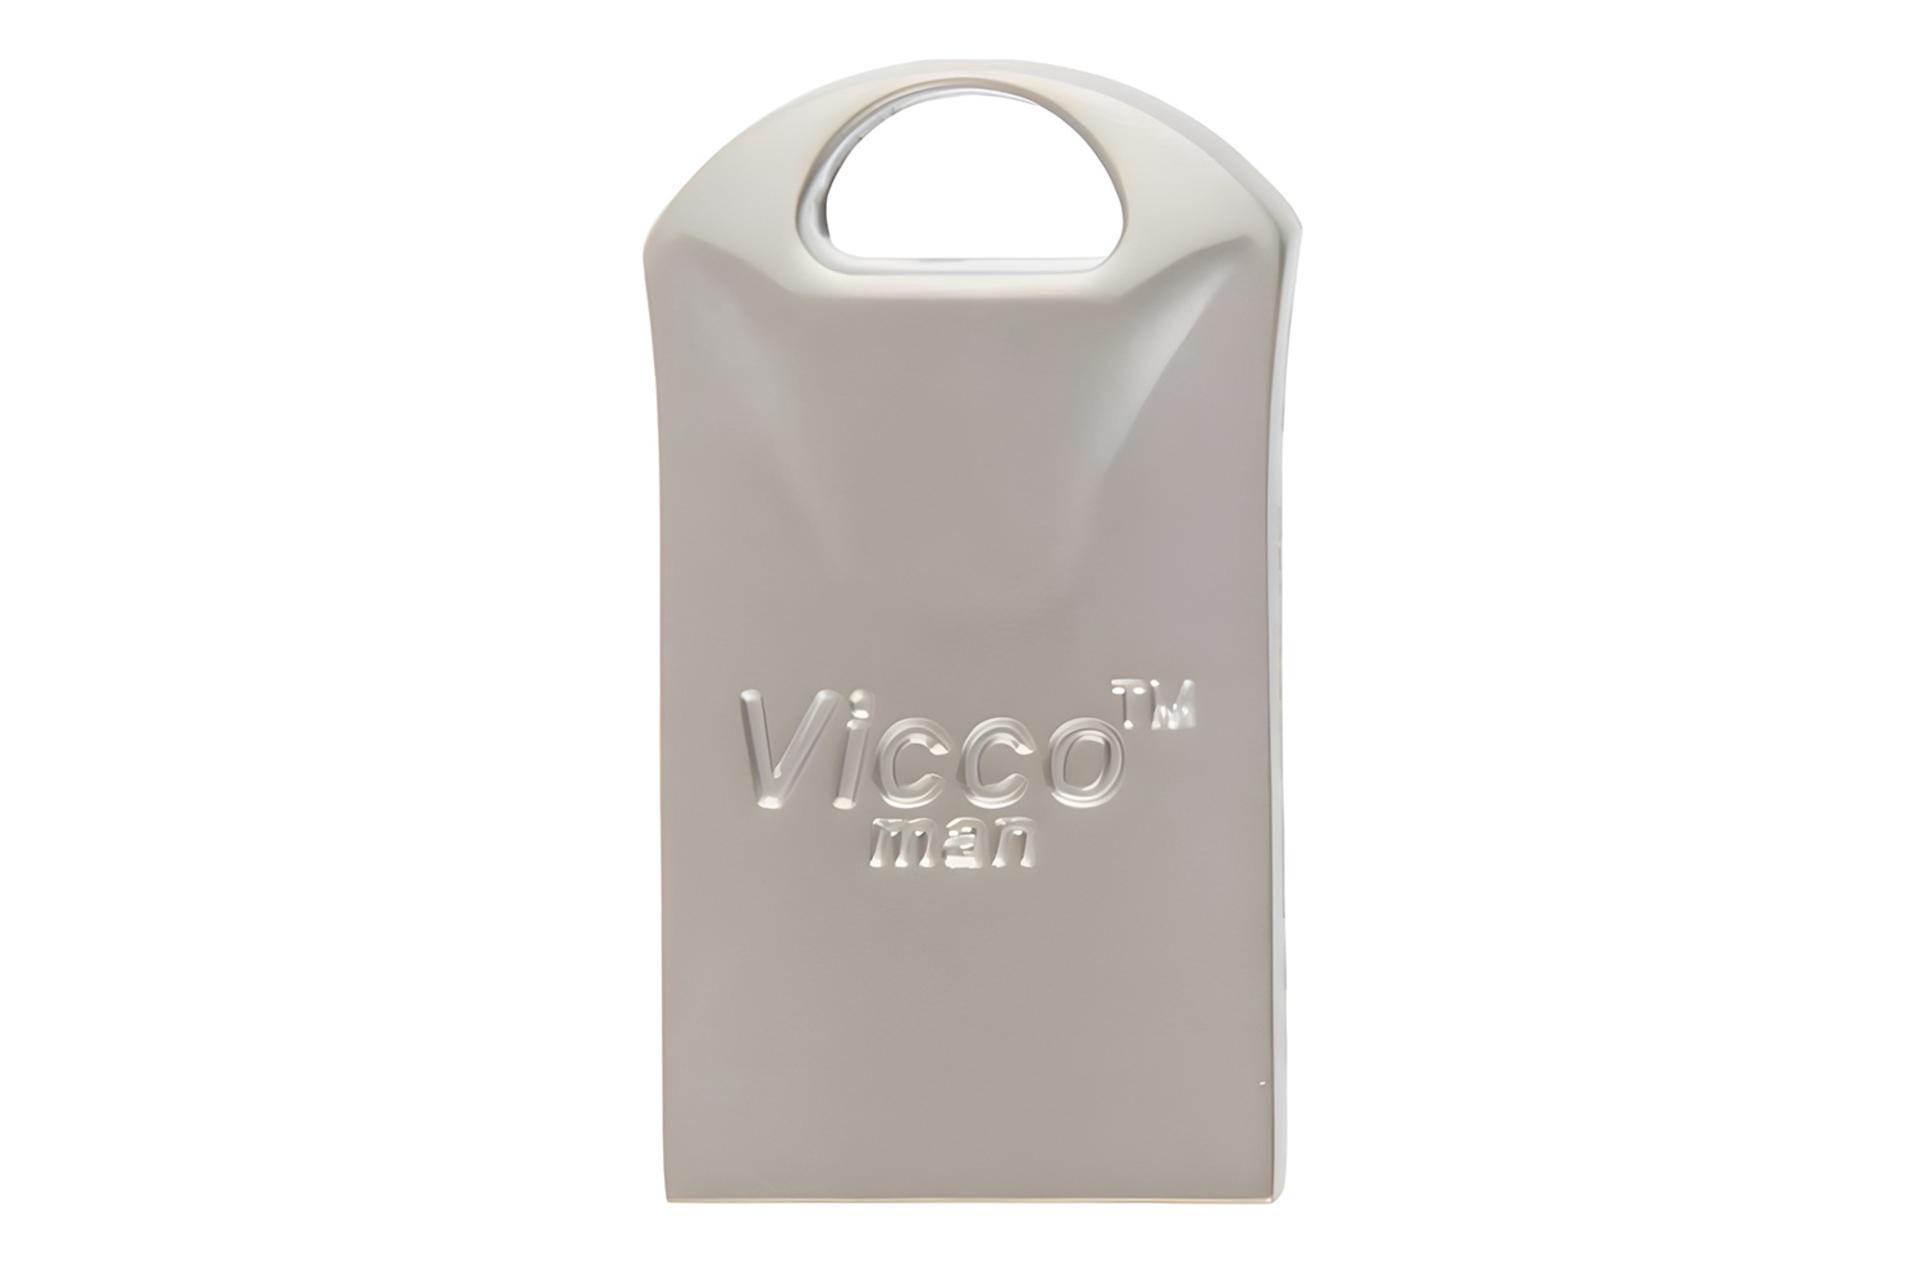 فلش مموری ویکومن Viccoman VC300 S 16GB USB 3.1